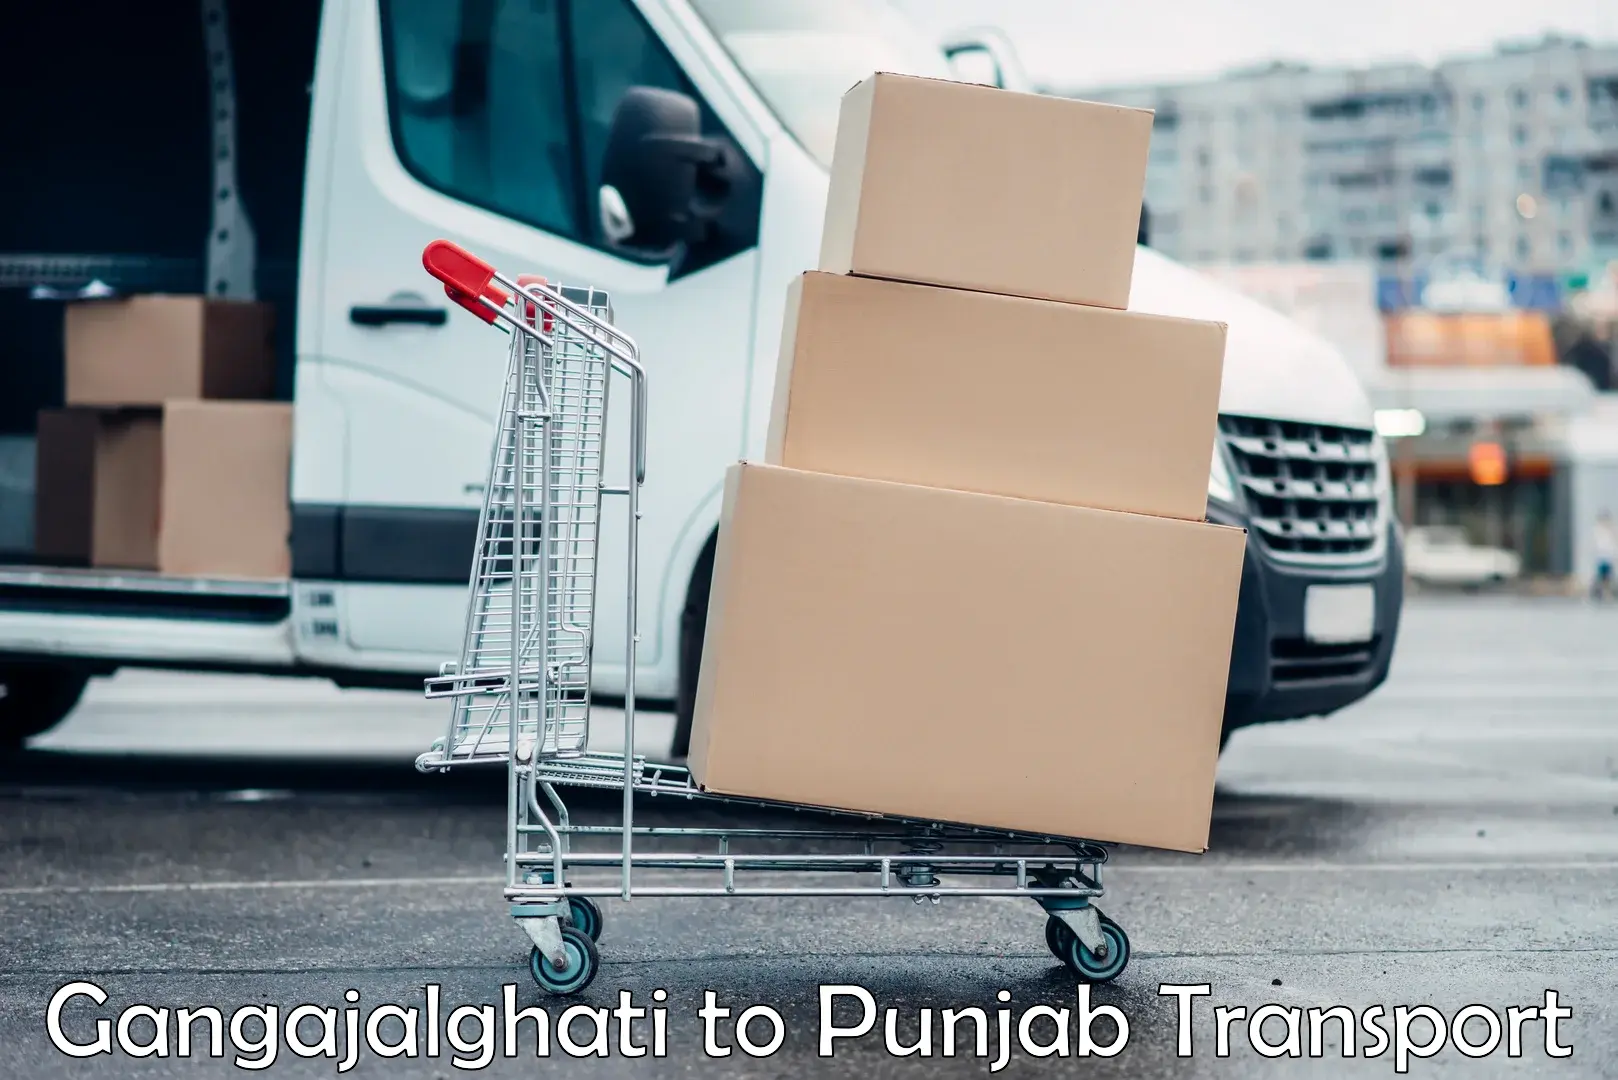 Road transport services Gangajalghati to Punjab